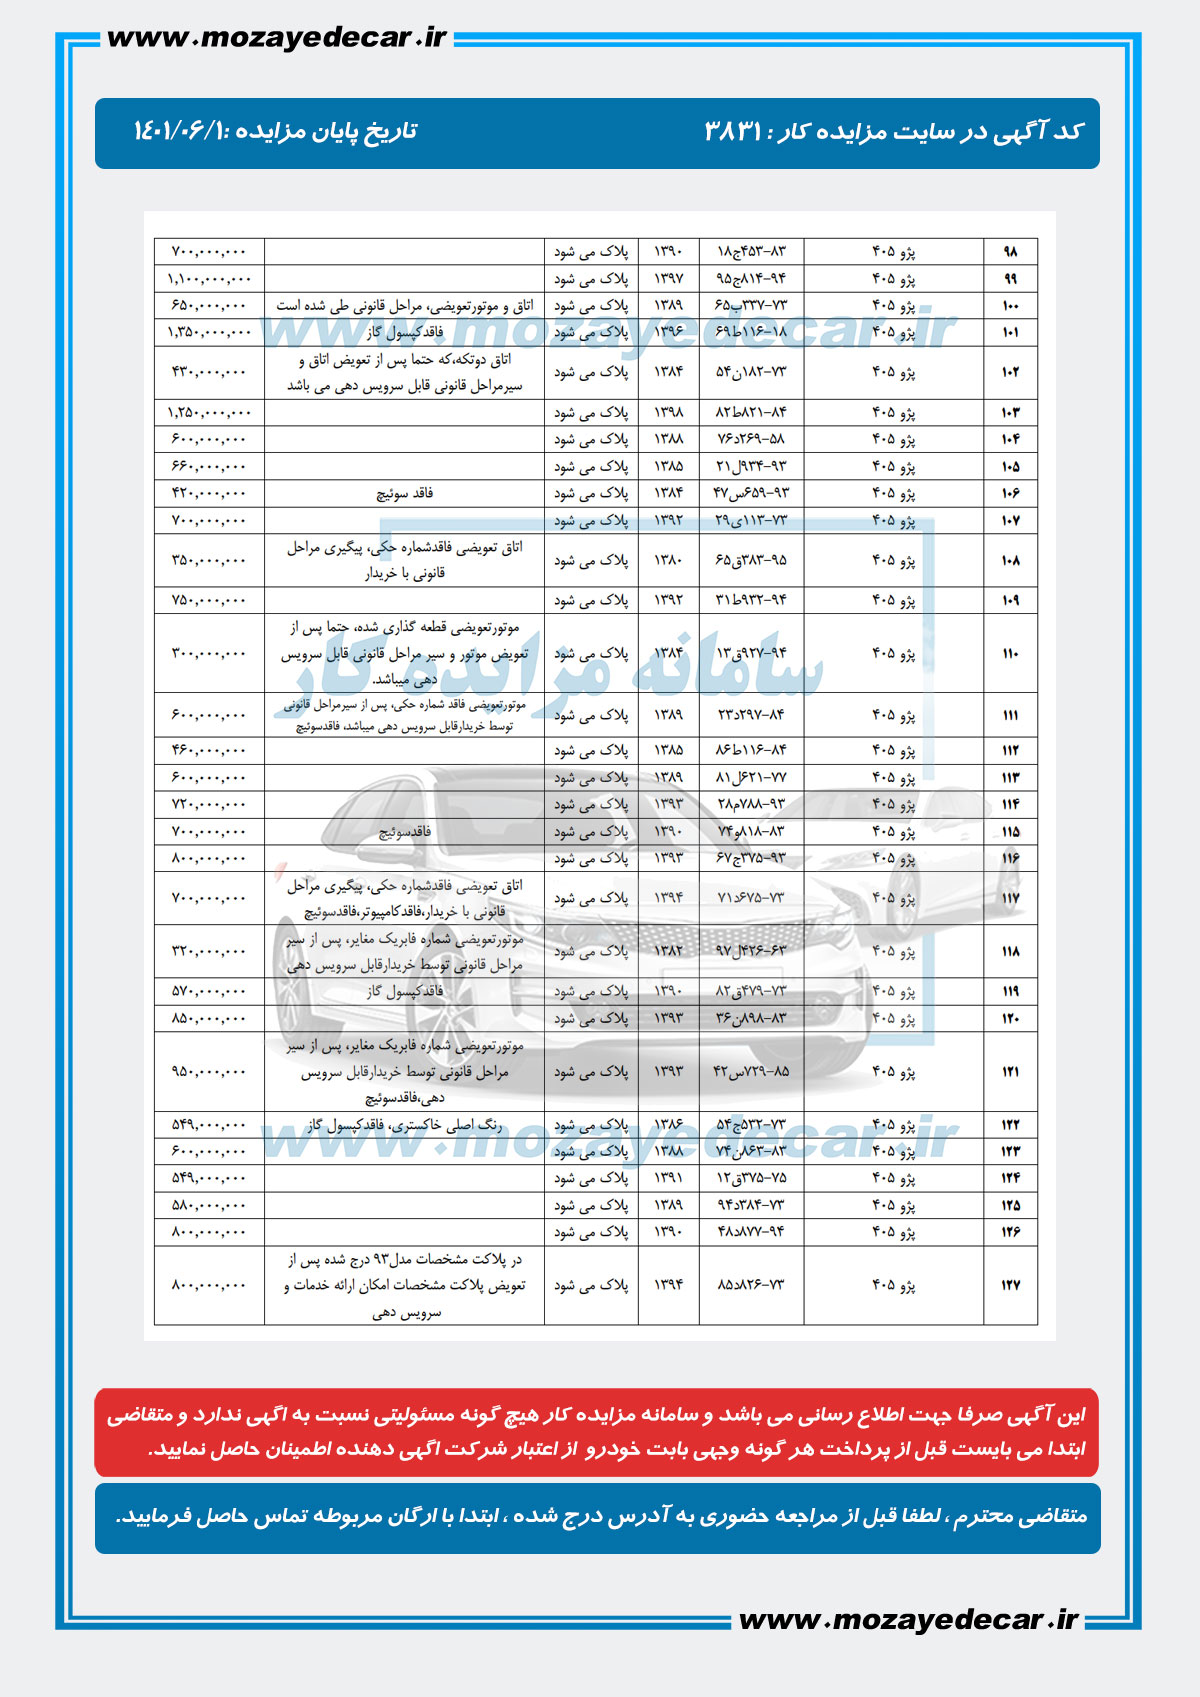 لیست قیمت مزایده شیراز